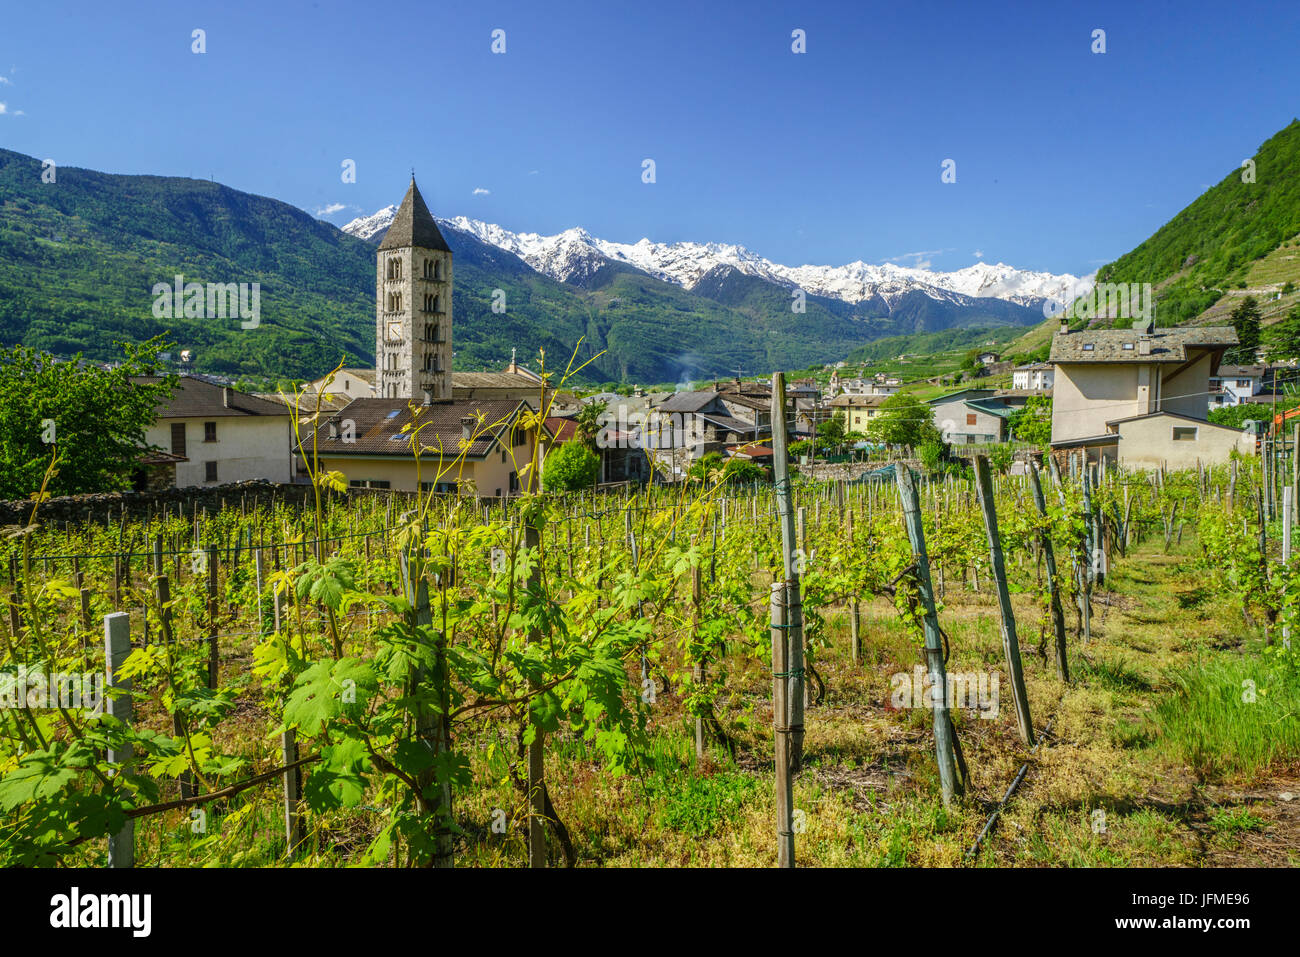 Église de Villa di Tirano par les vignobles en terrasses de la Valteline Bianzone province de Sondrio Lombardie Italie Europe Banque D'Images